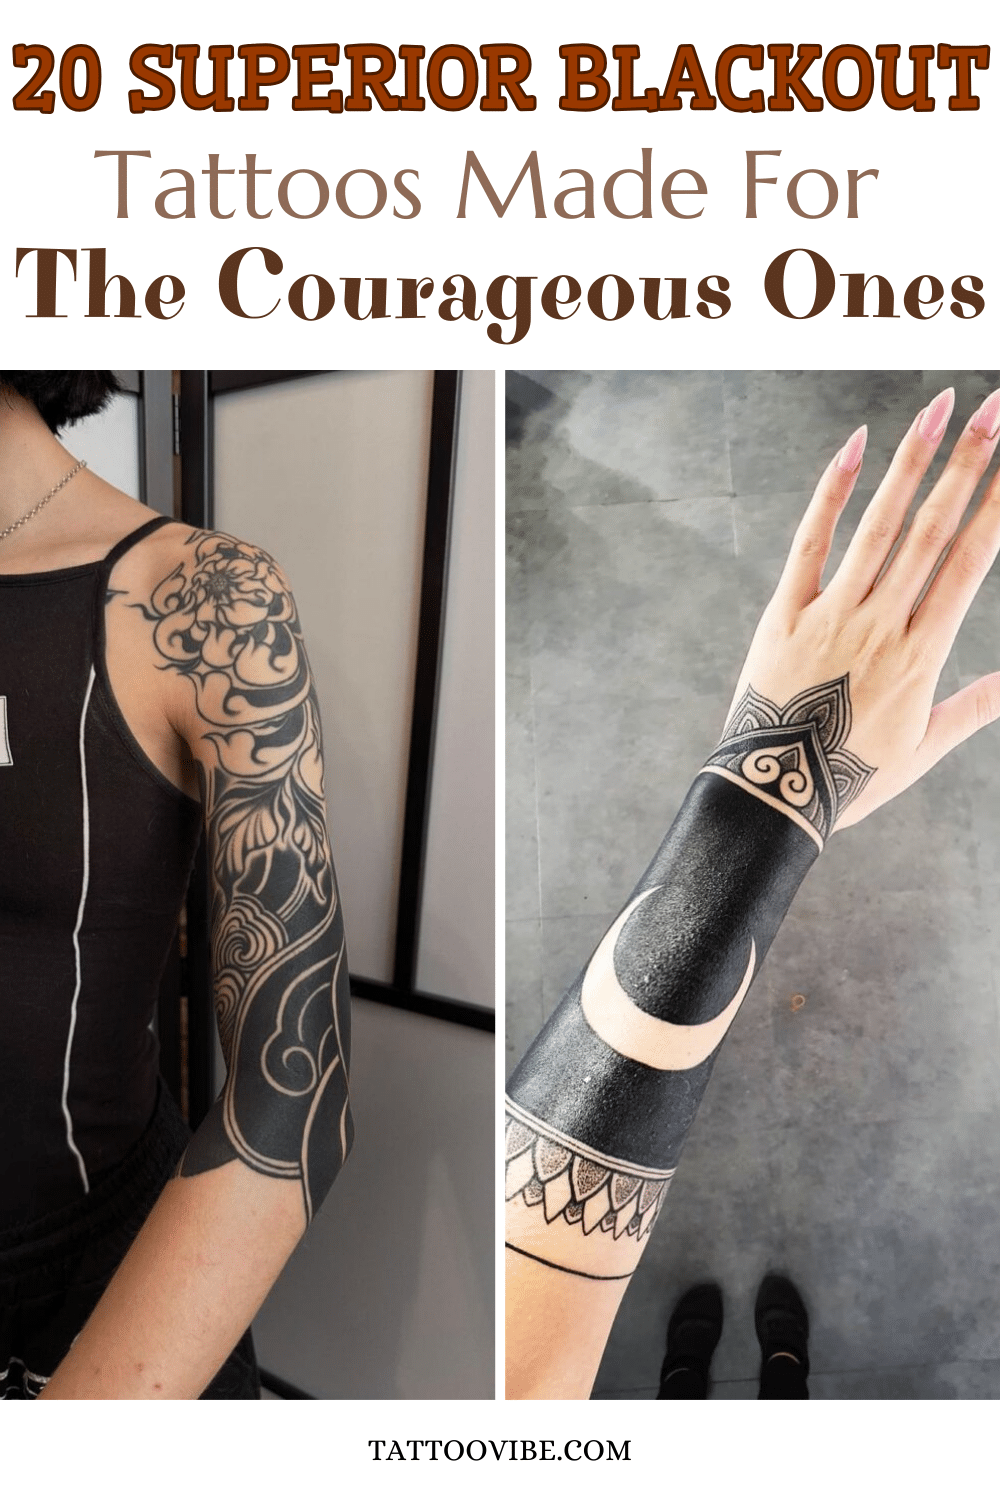 20 tatuaggi blackout di qualità superiore fatti per i più coraggiosi